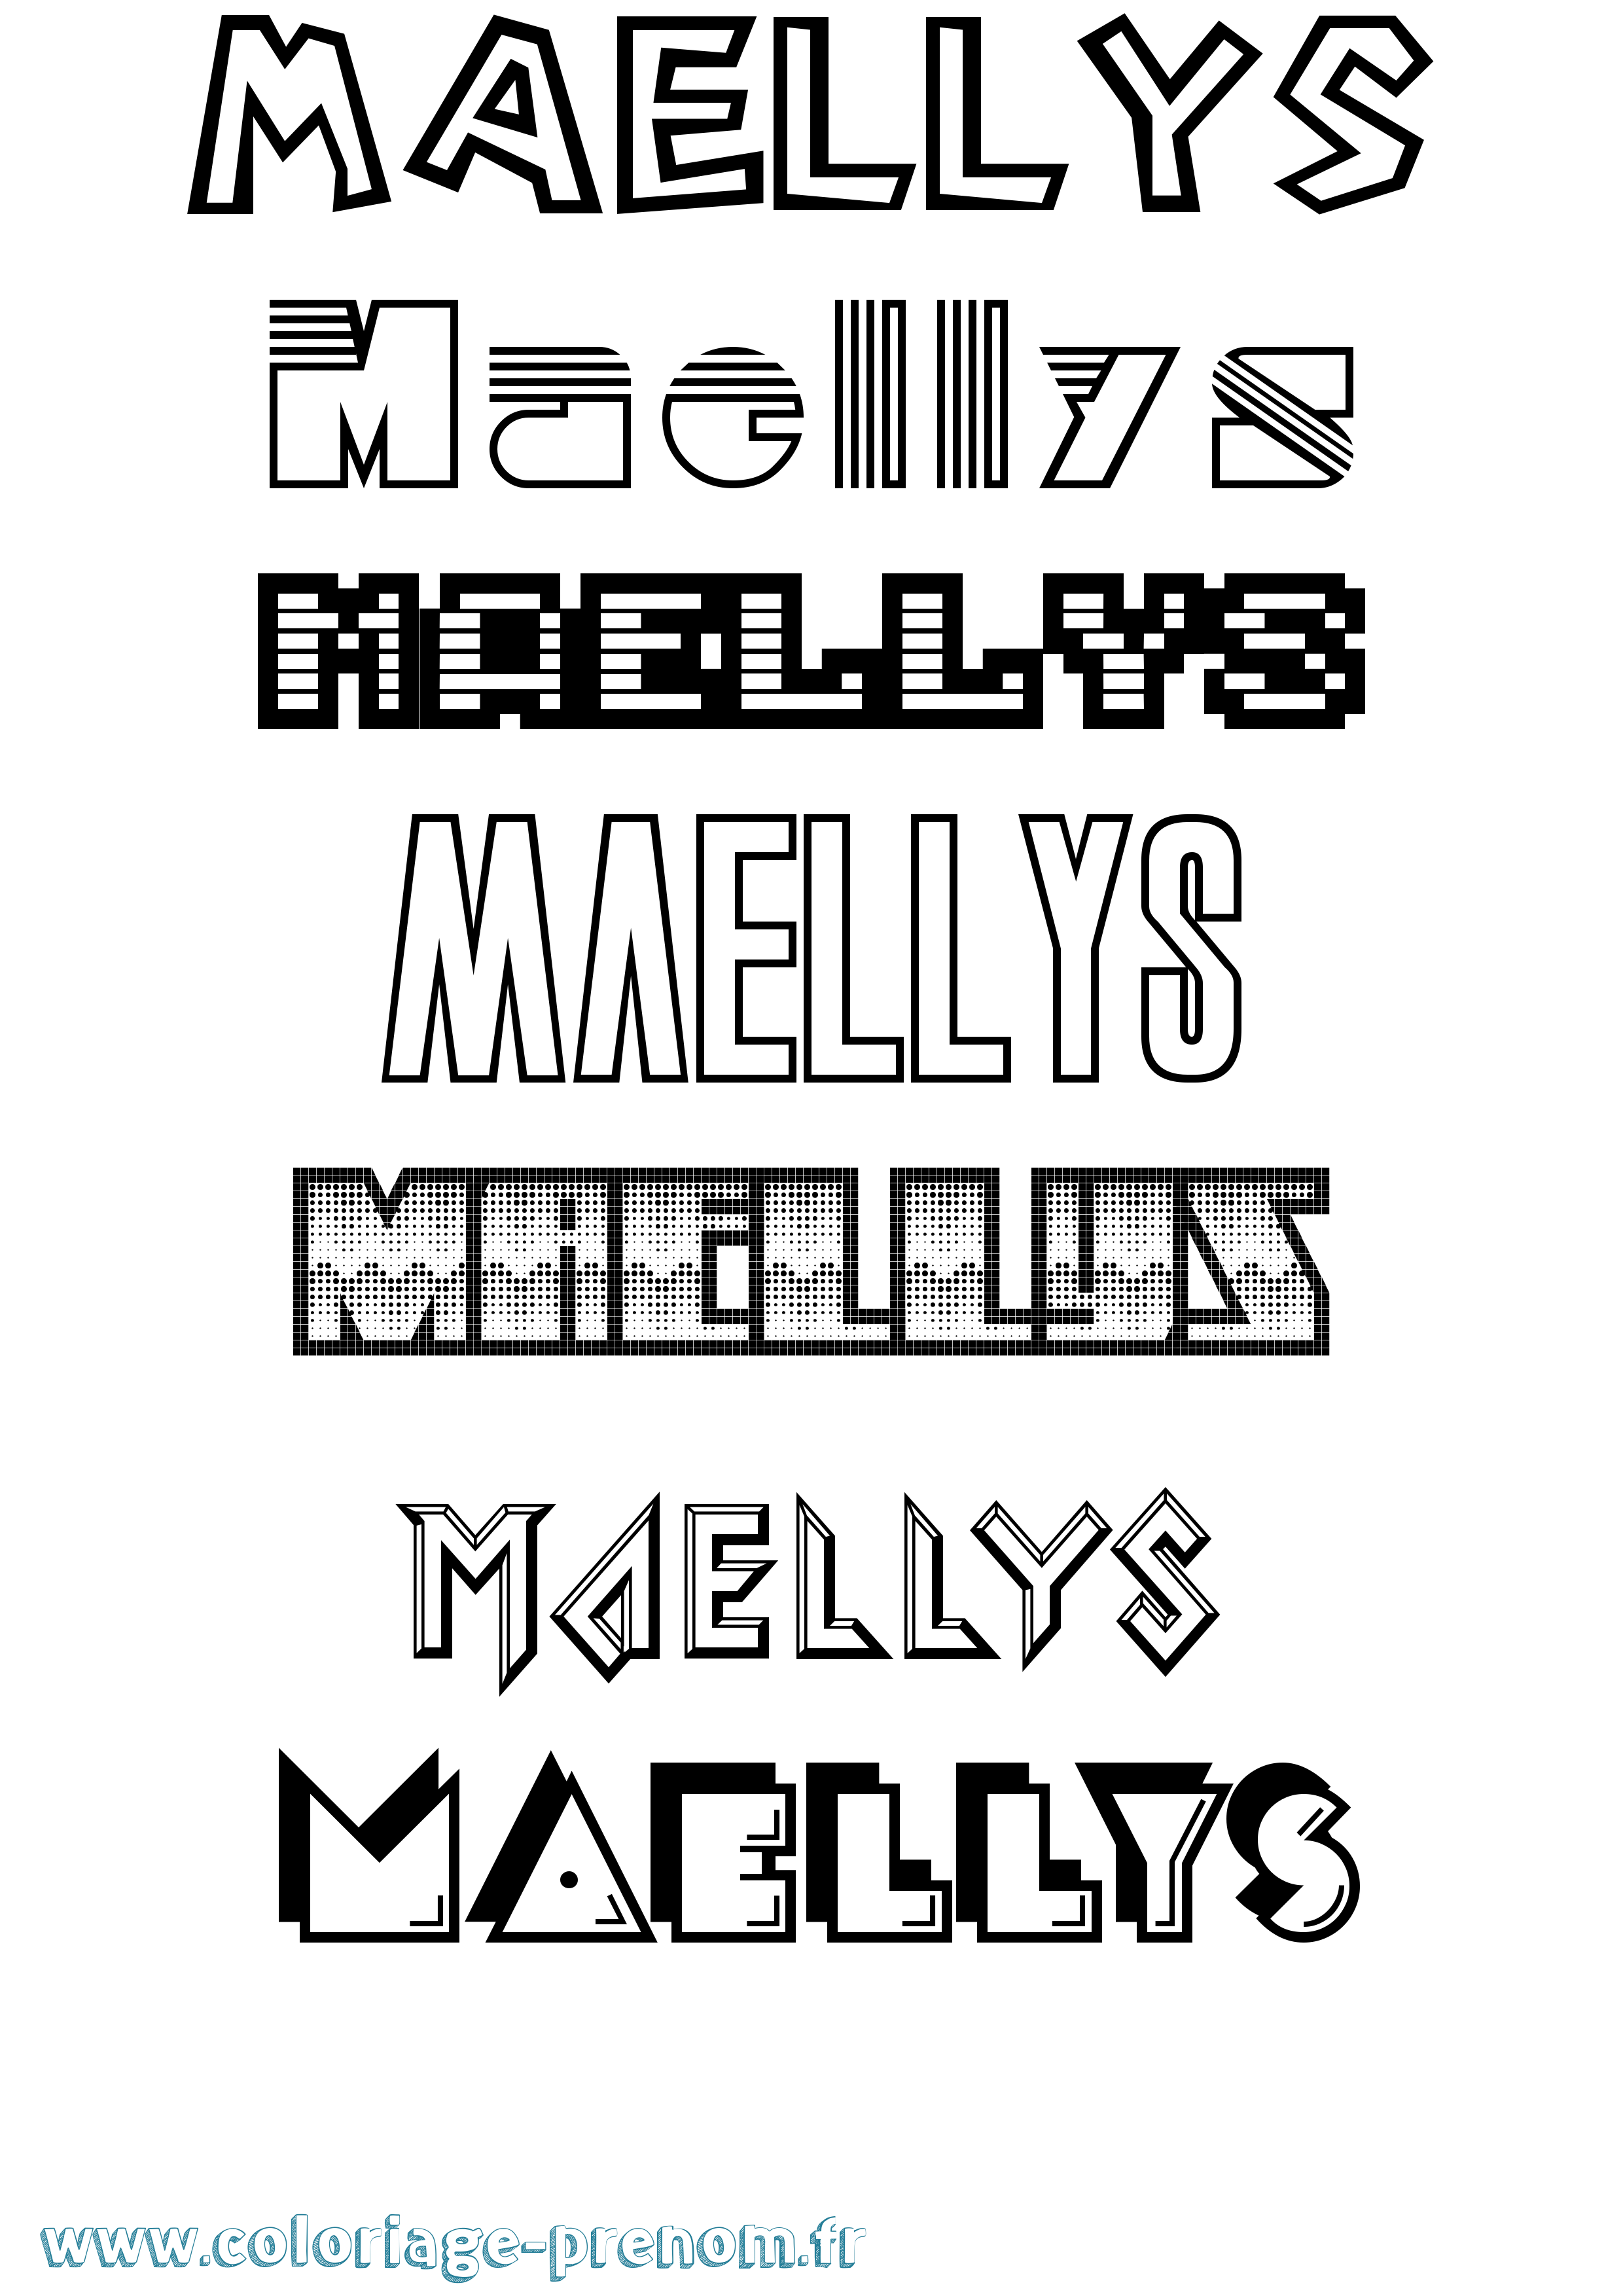 Coloriage prénom Maellys Jeux Vidéos